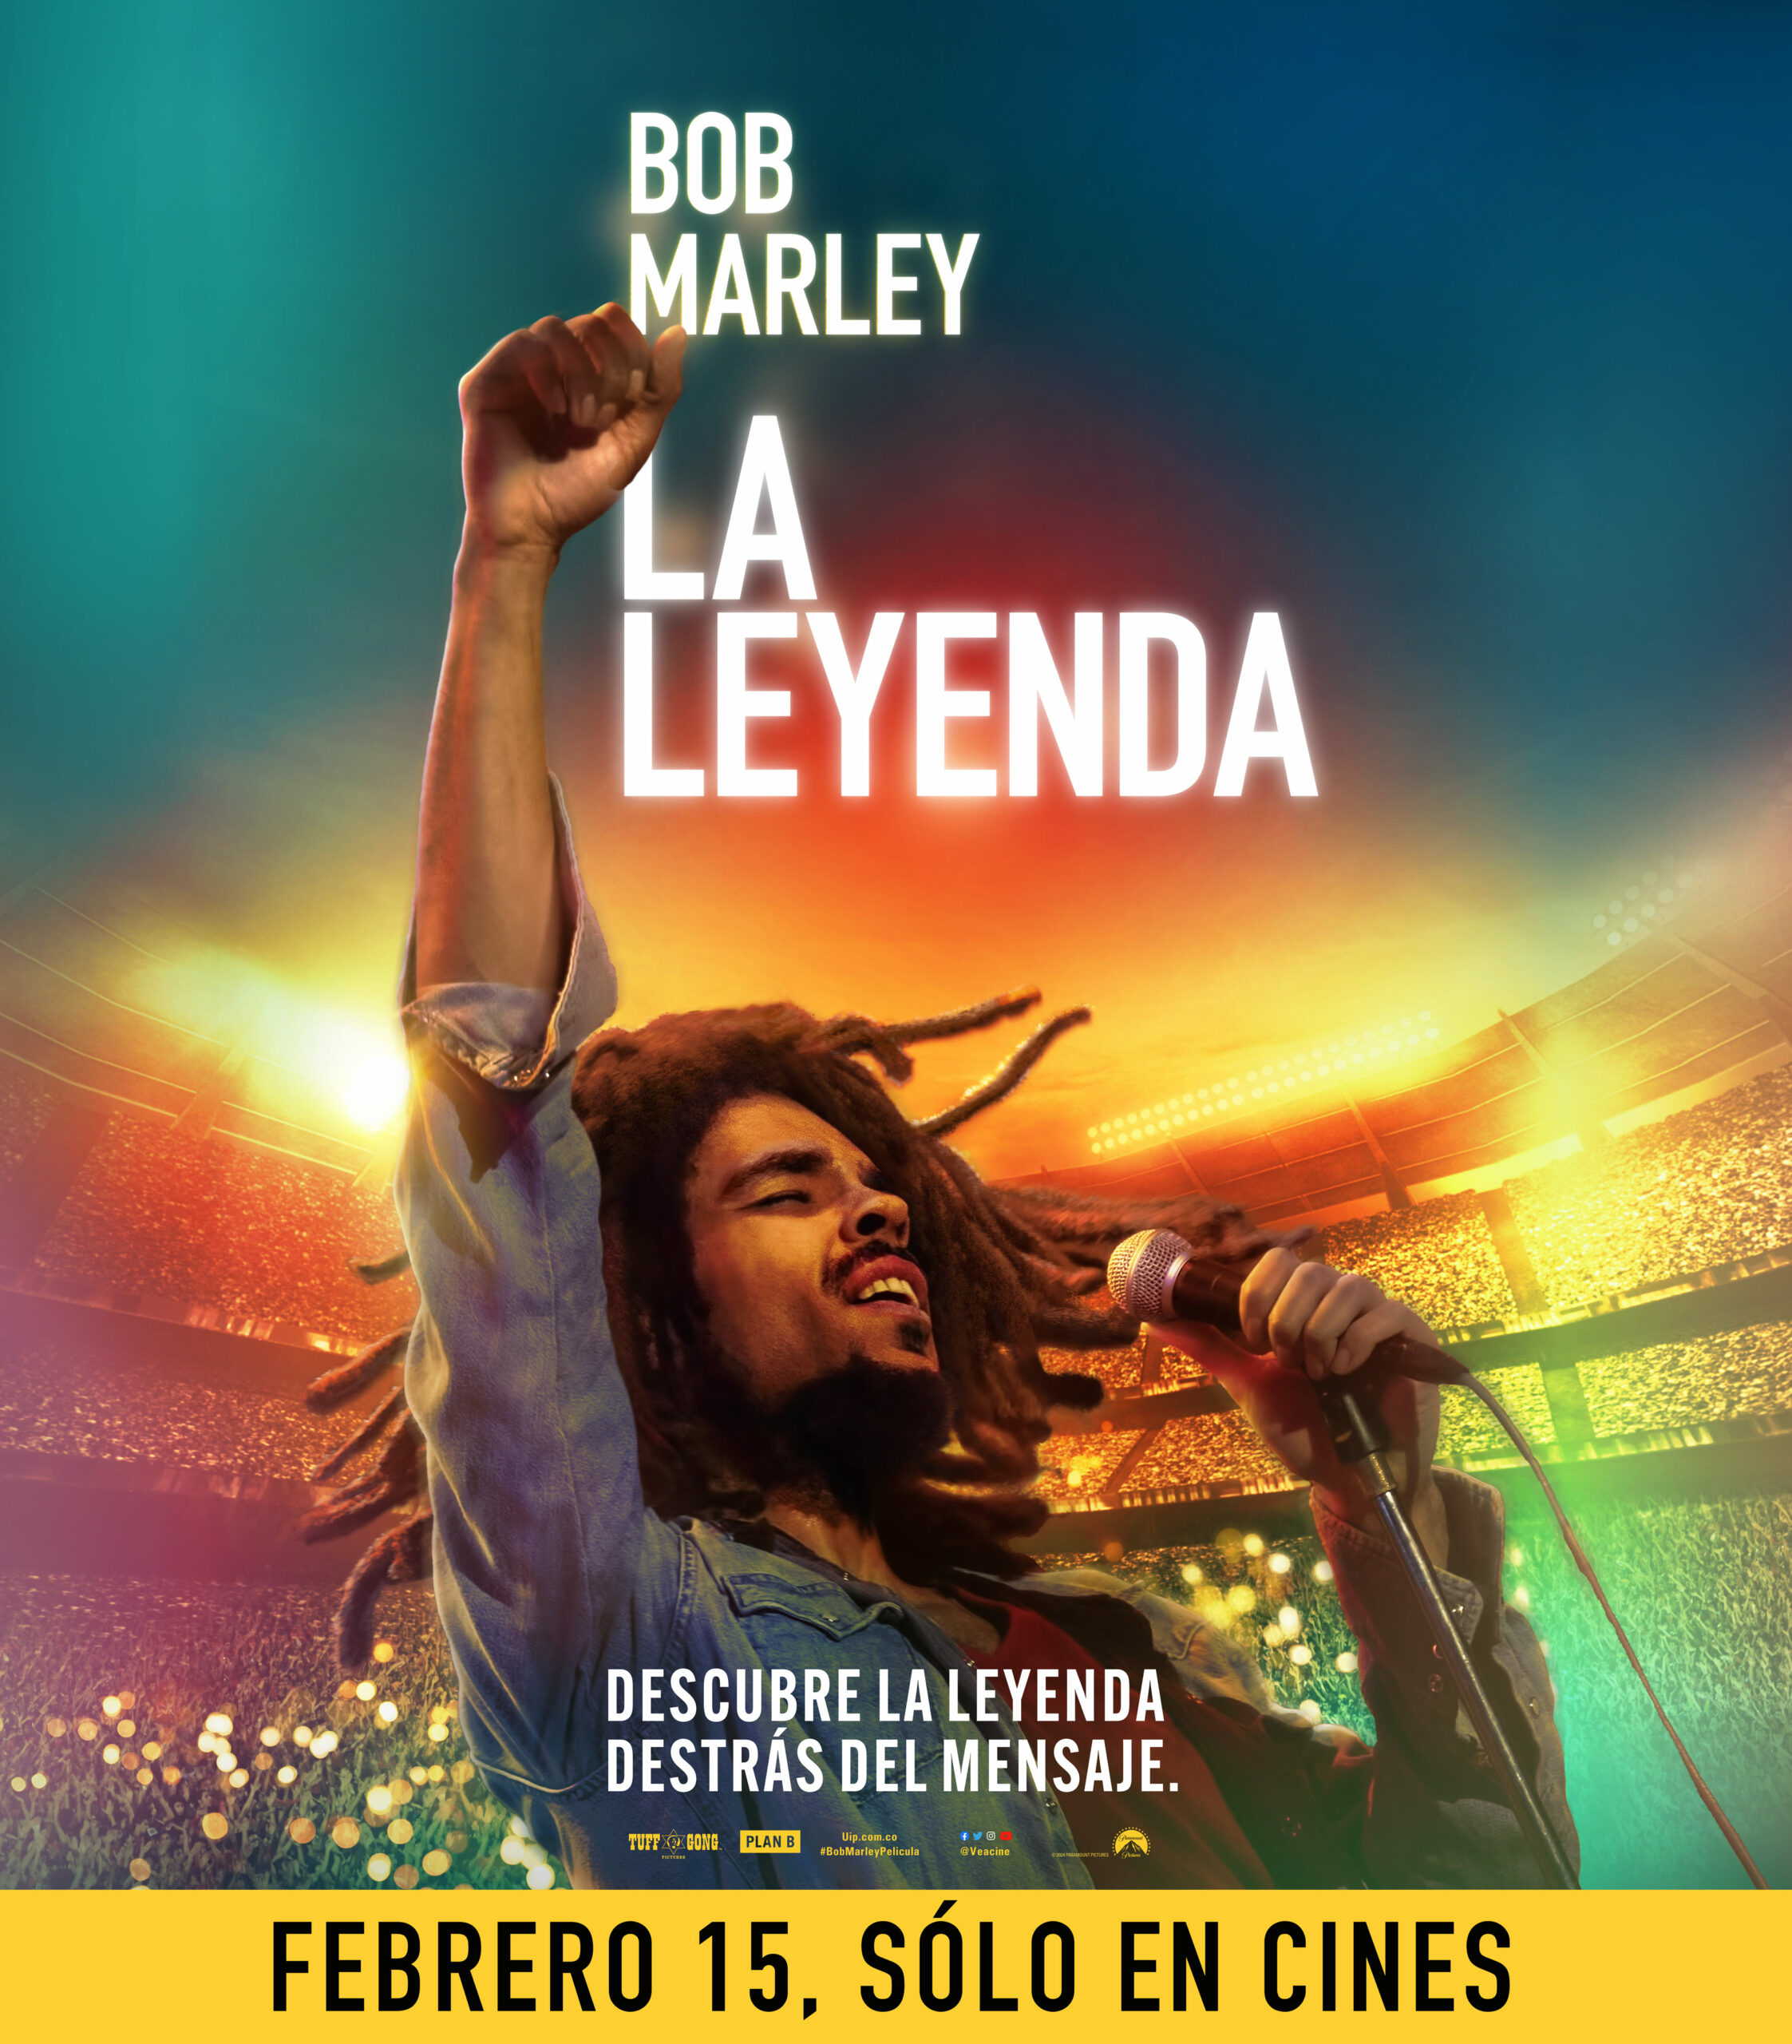 Bob Marley La leyenda llega hoy a todas las Salas de Cine